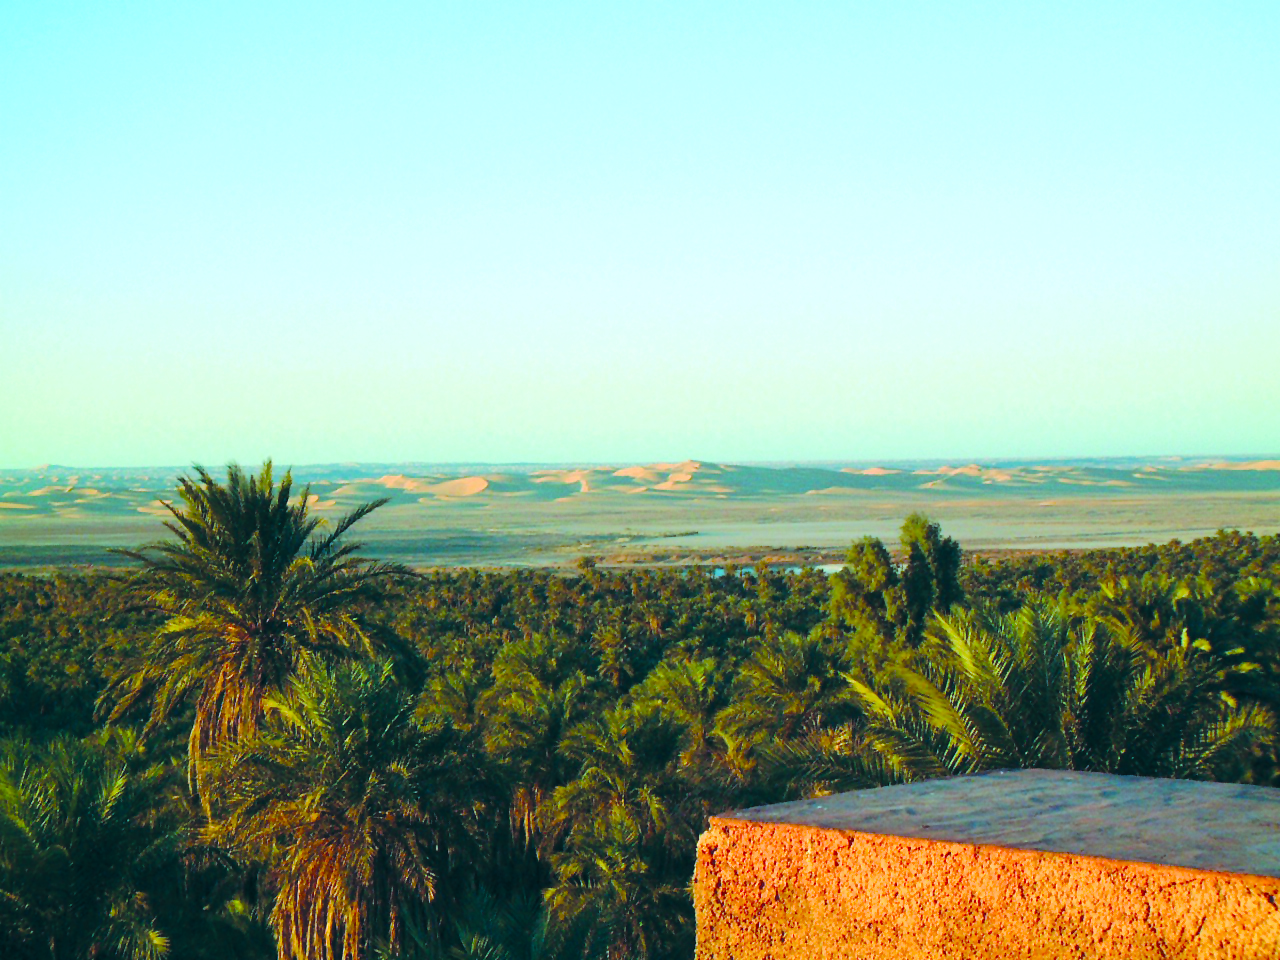 رشيد بوجدرة وإبراهيم سعدي نموذجاً تمثيل الصحراء في الرواية الجزائرية 